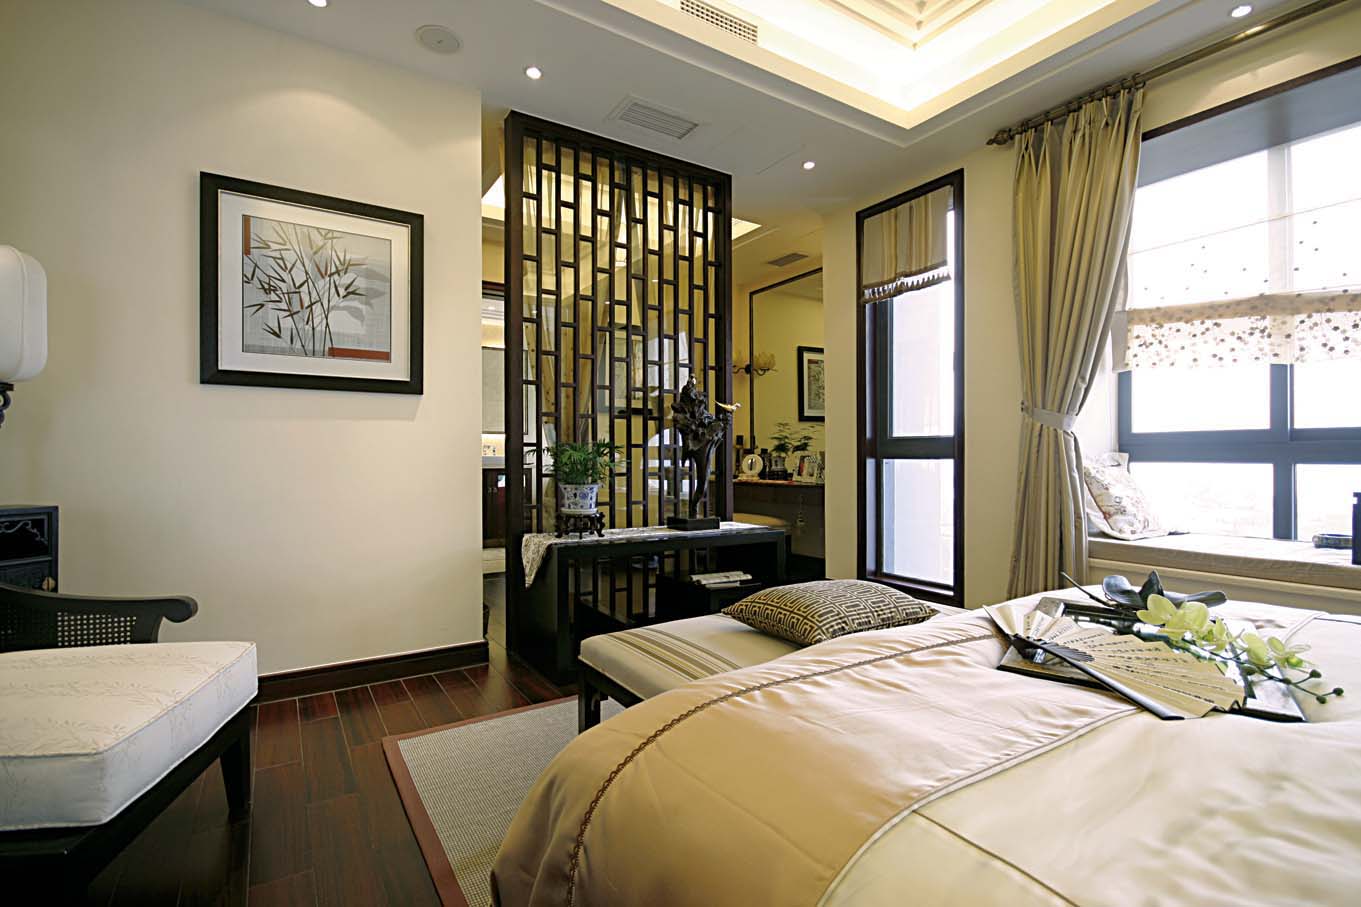 卧室整体白色和木质纹理营造温馨舒适的感觉。